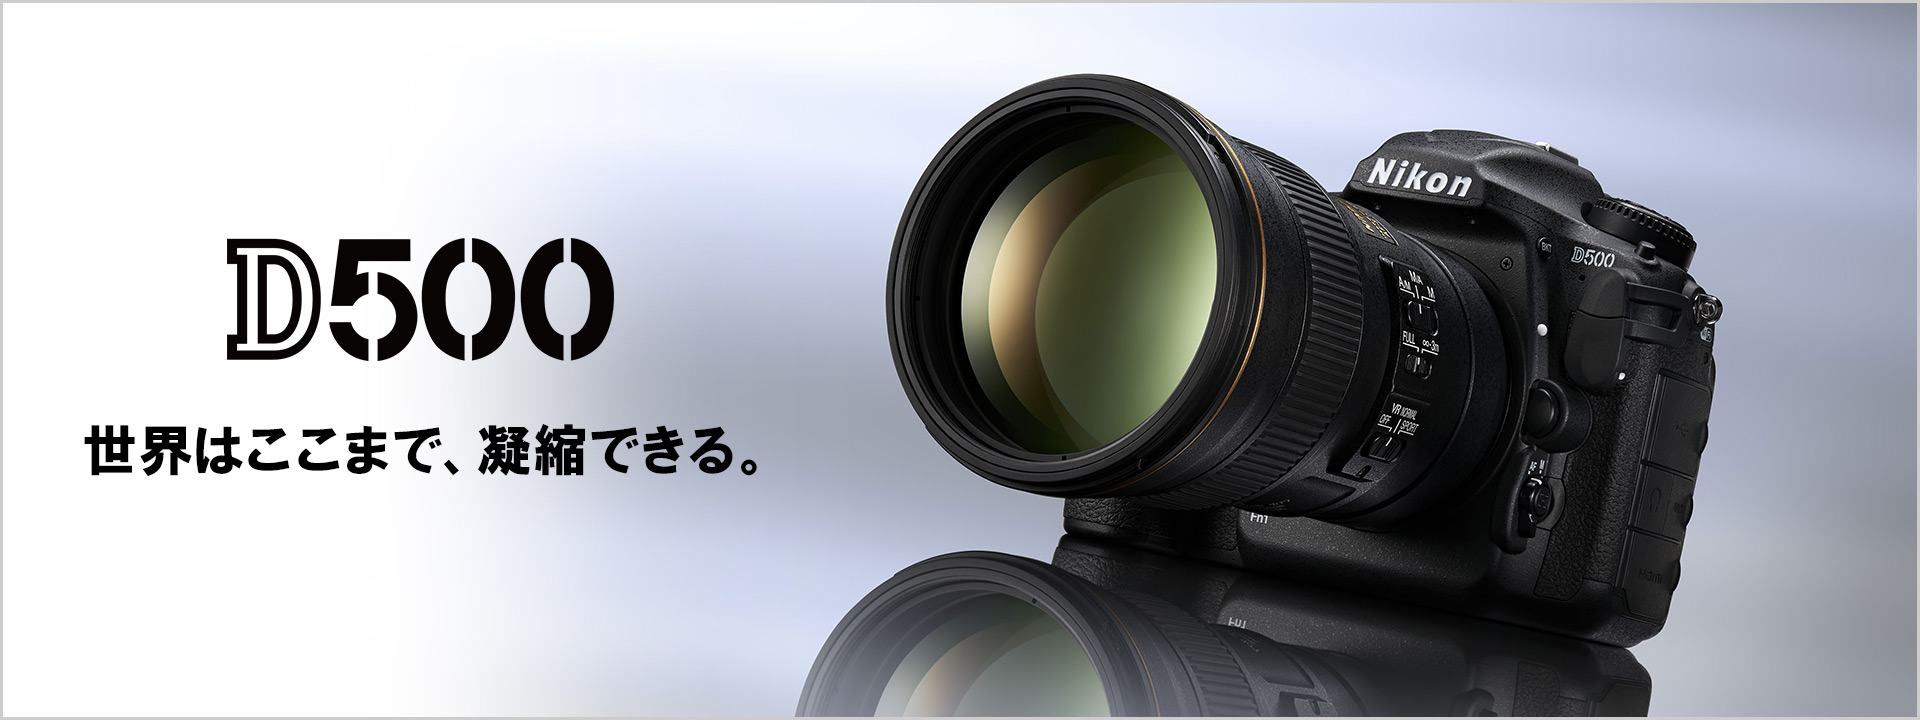 D500 Nikon